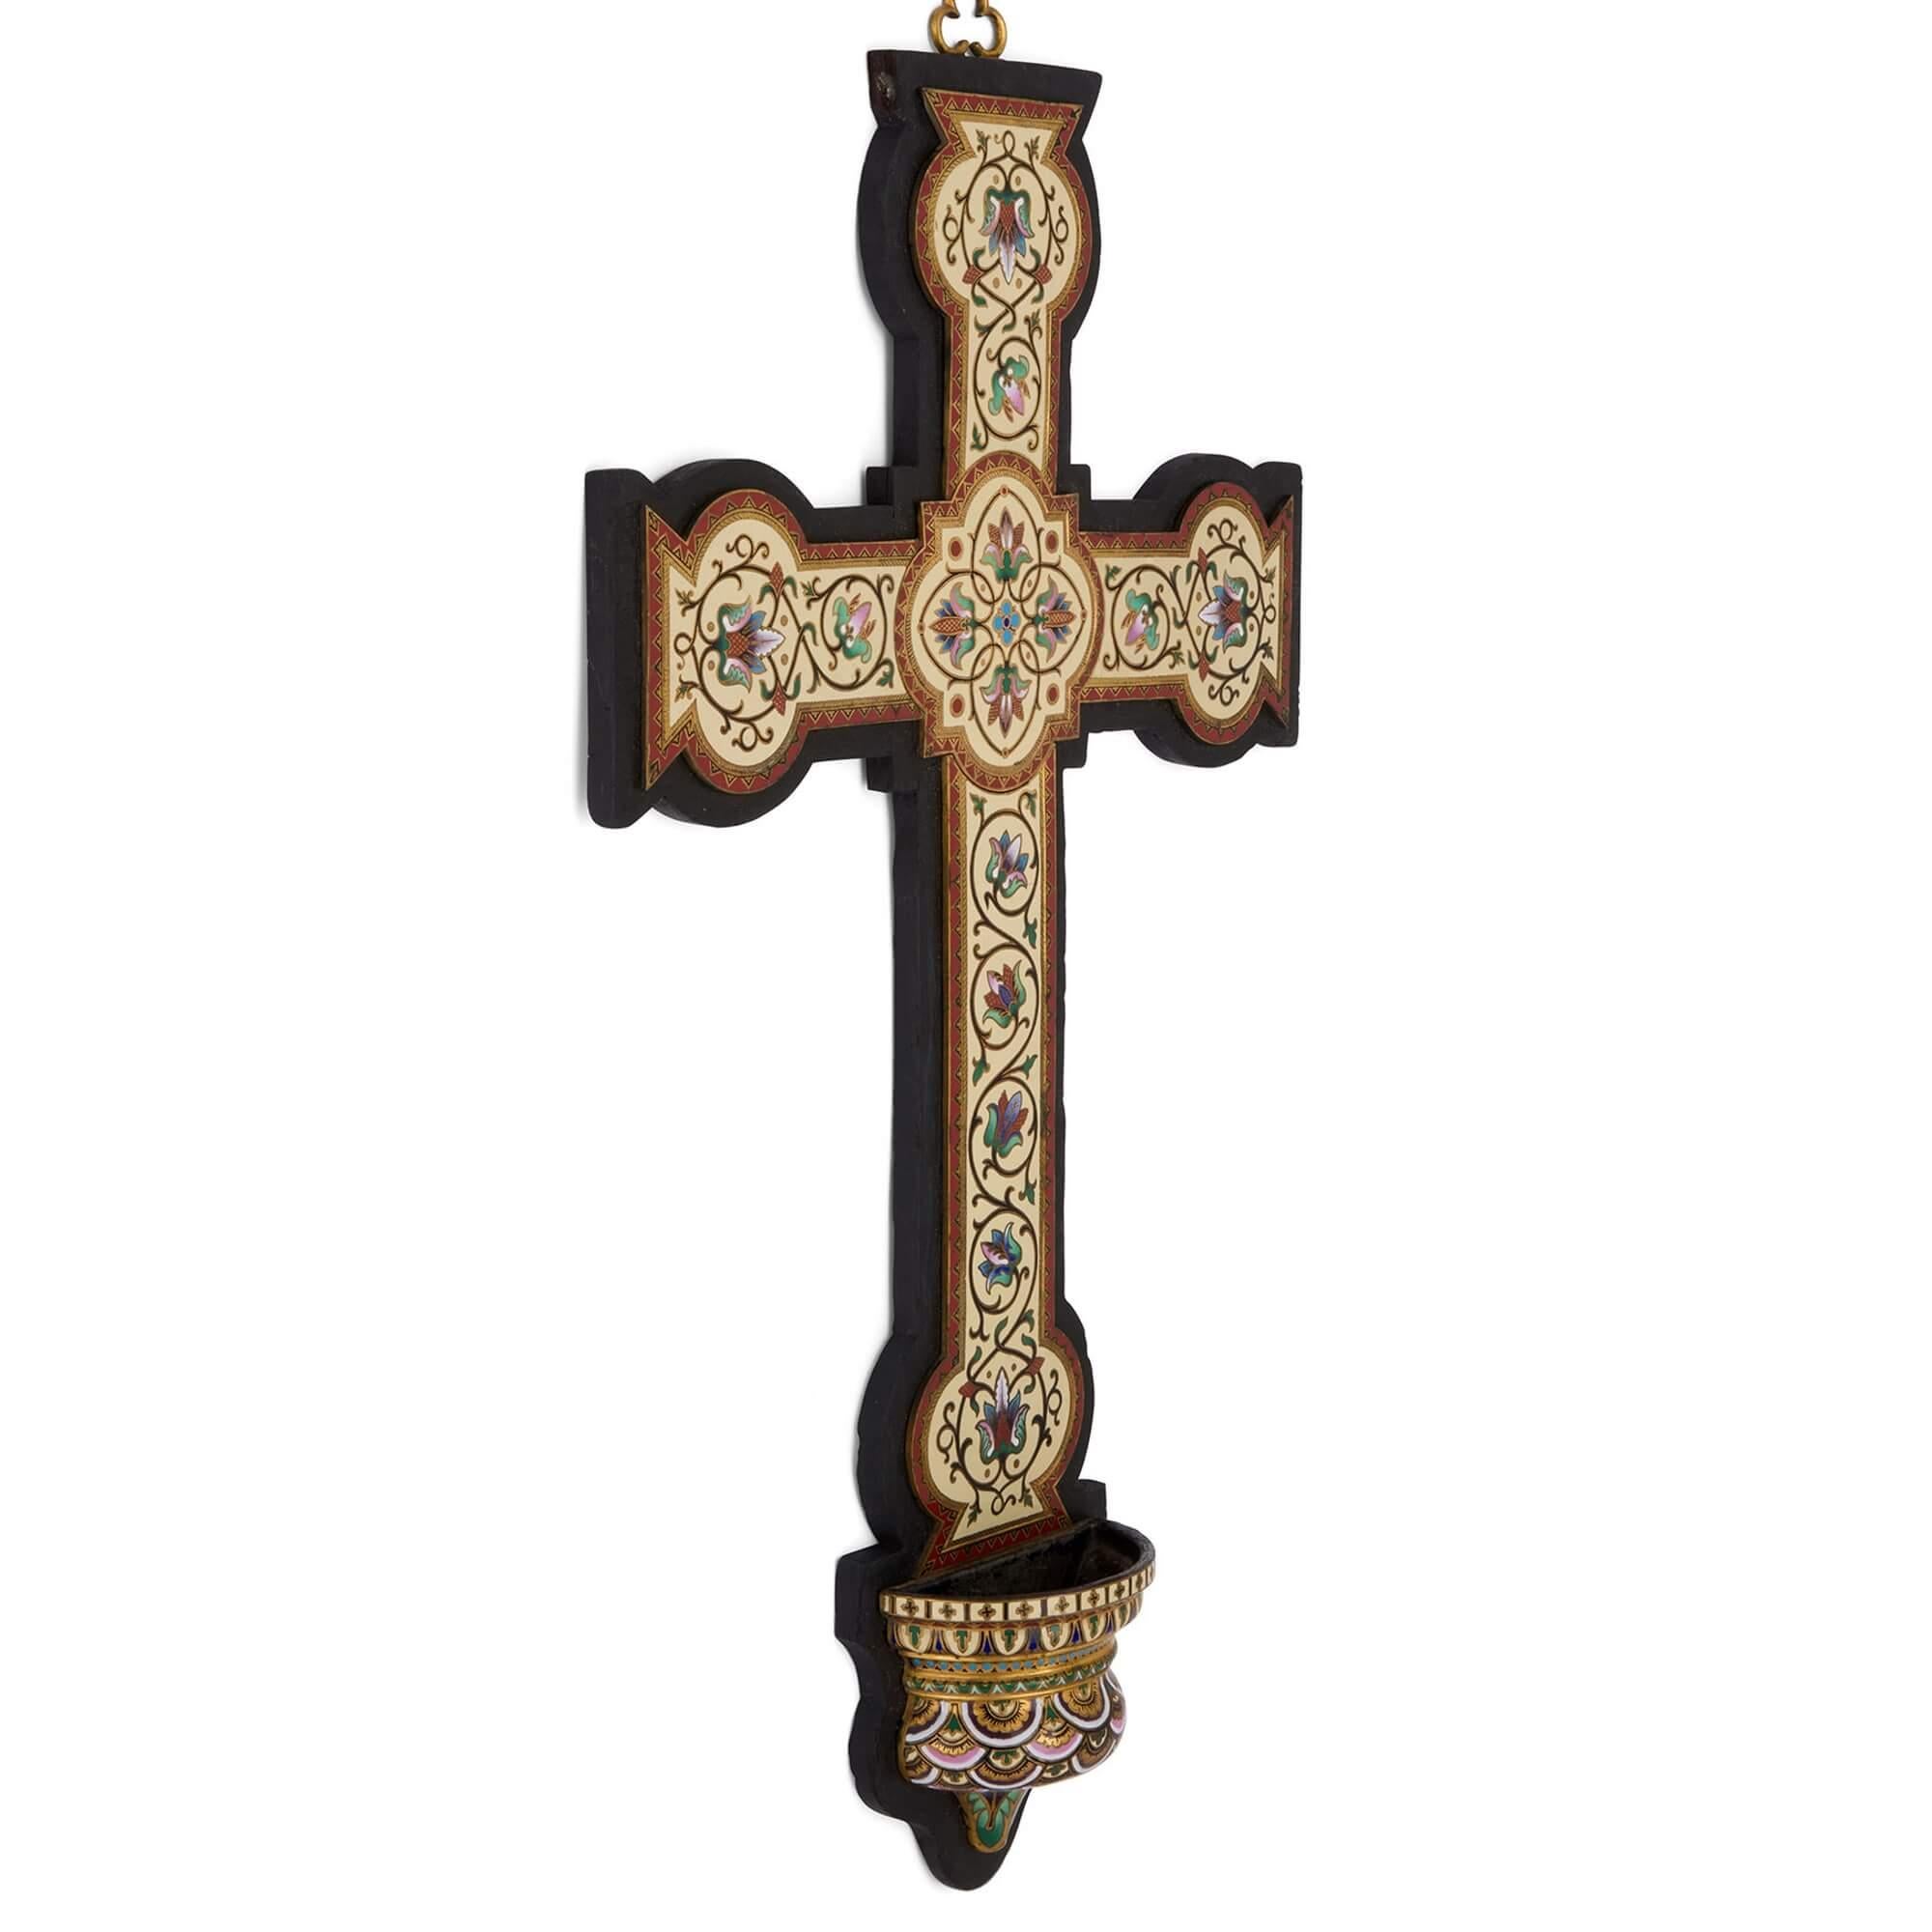 Grand crucifix mural ancien en émail cloisonné avec fonts baptismaux 
Français, fin du 19e siècle 
Hauteur 57cm, largeur 33cm, profondeur 7cm

Cette superbe croix décorative est conçue pour être accrochée au mur, ce que permet la petite poignée en